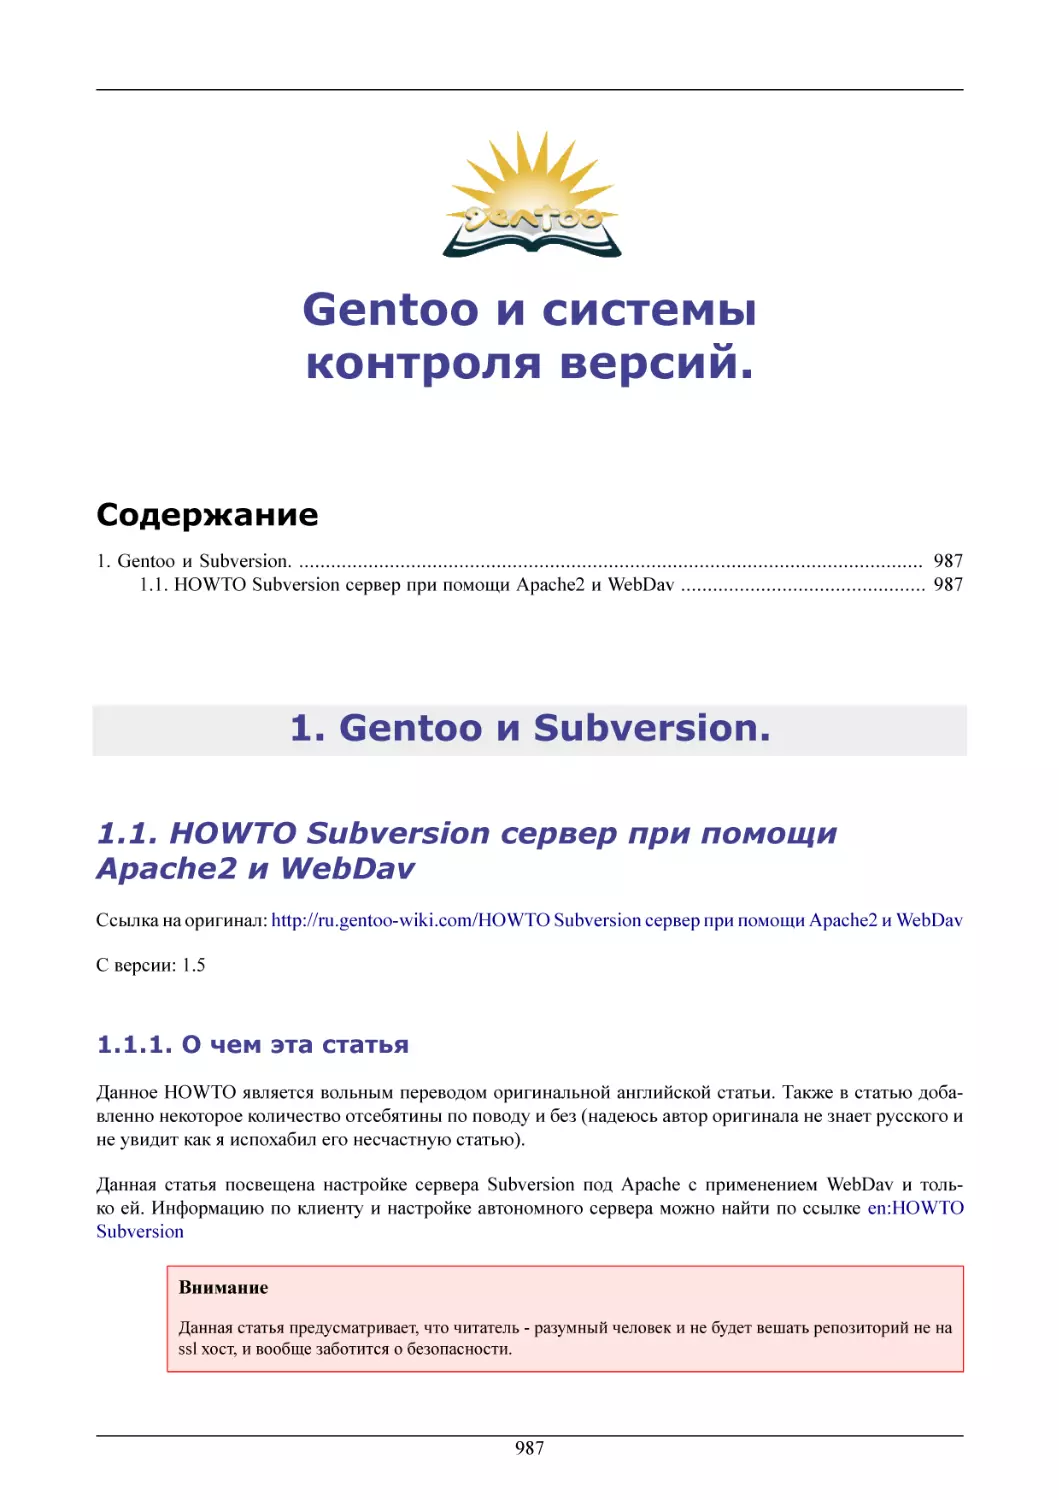 Gentoo и системы контроля версий.
Gentoo и Subversion.
HOWTO Subversion сервер при помощи Apache2 и WebDav
О чем эта статья